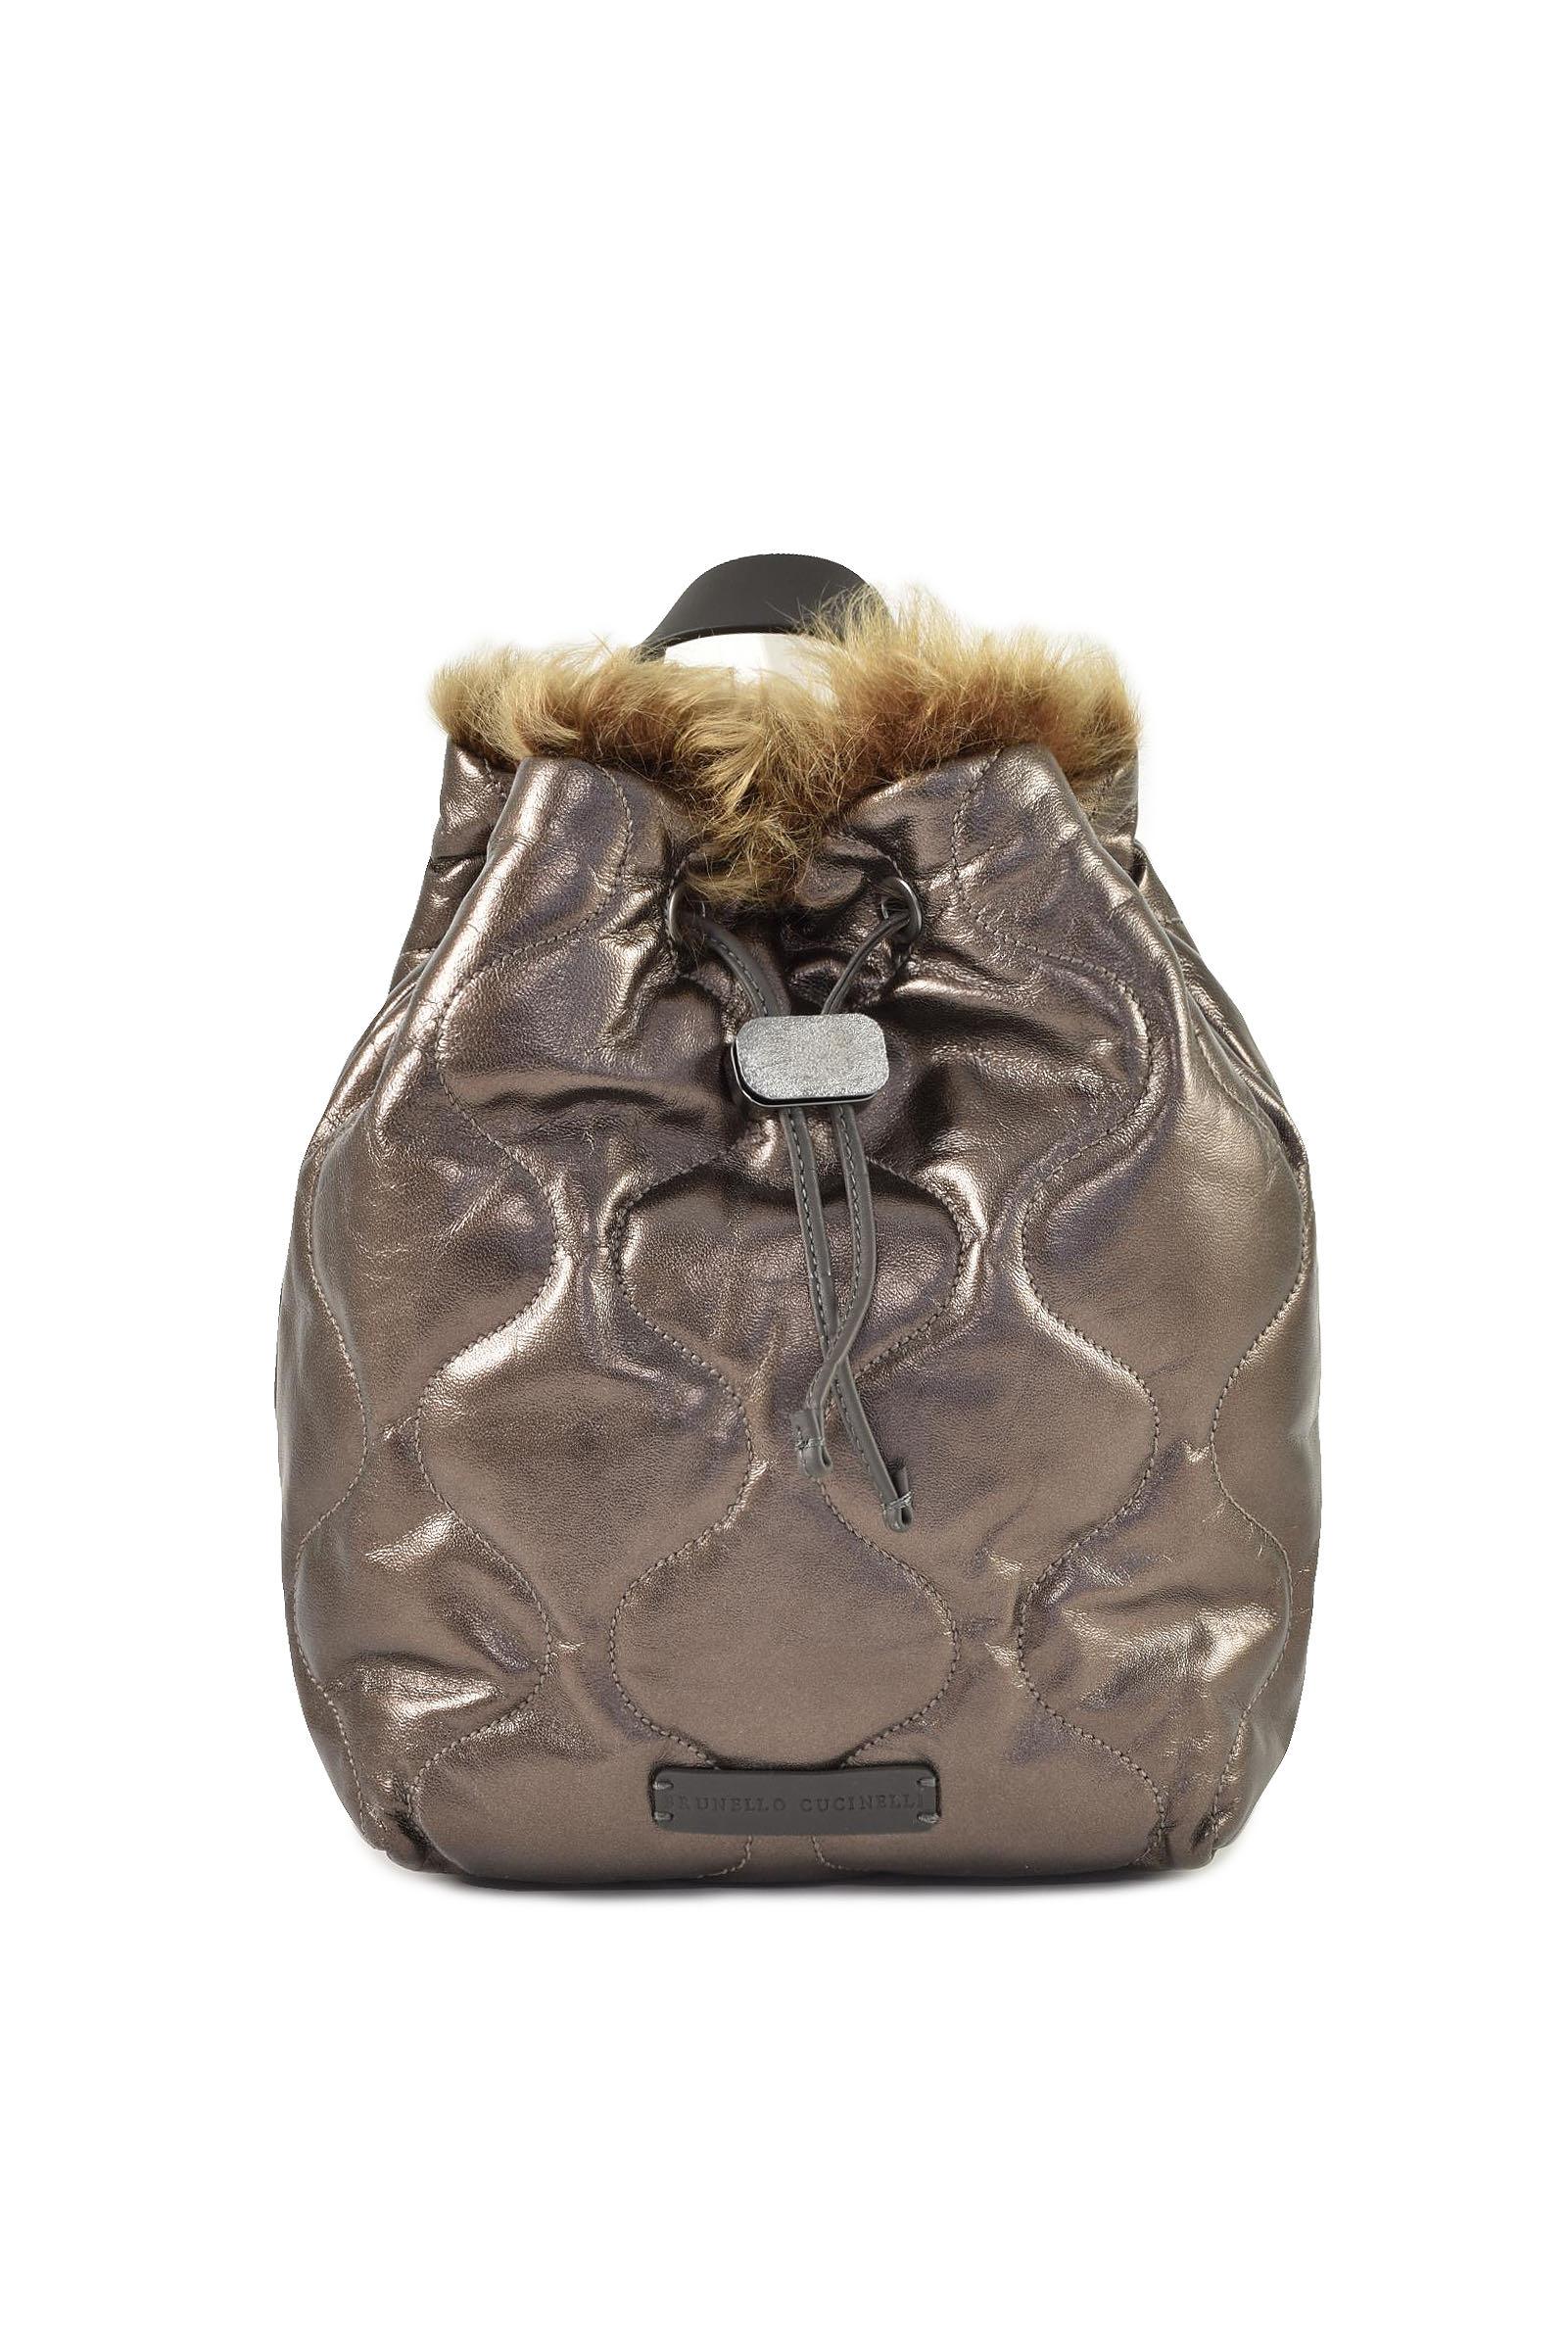 Brunello Cucinelli Women's Brown Handbag